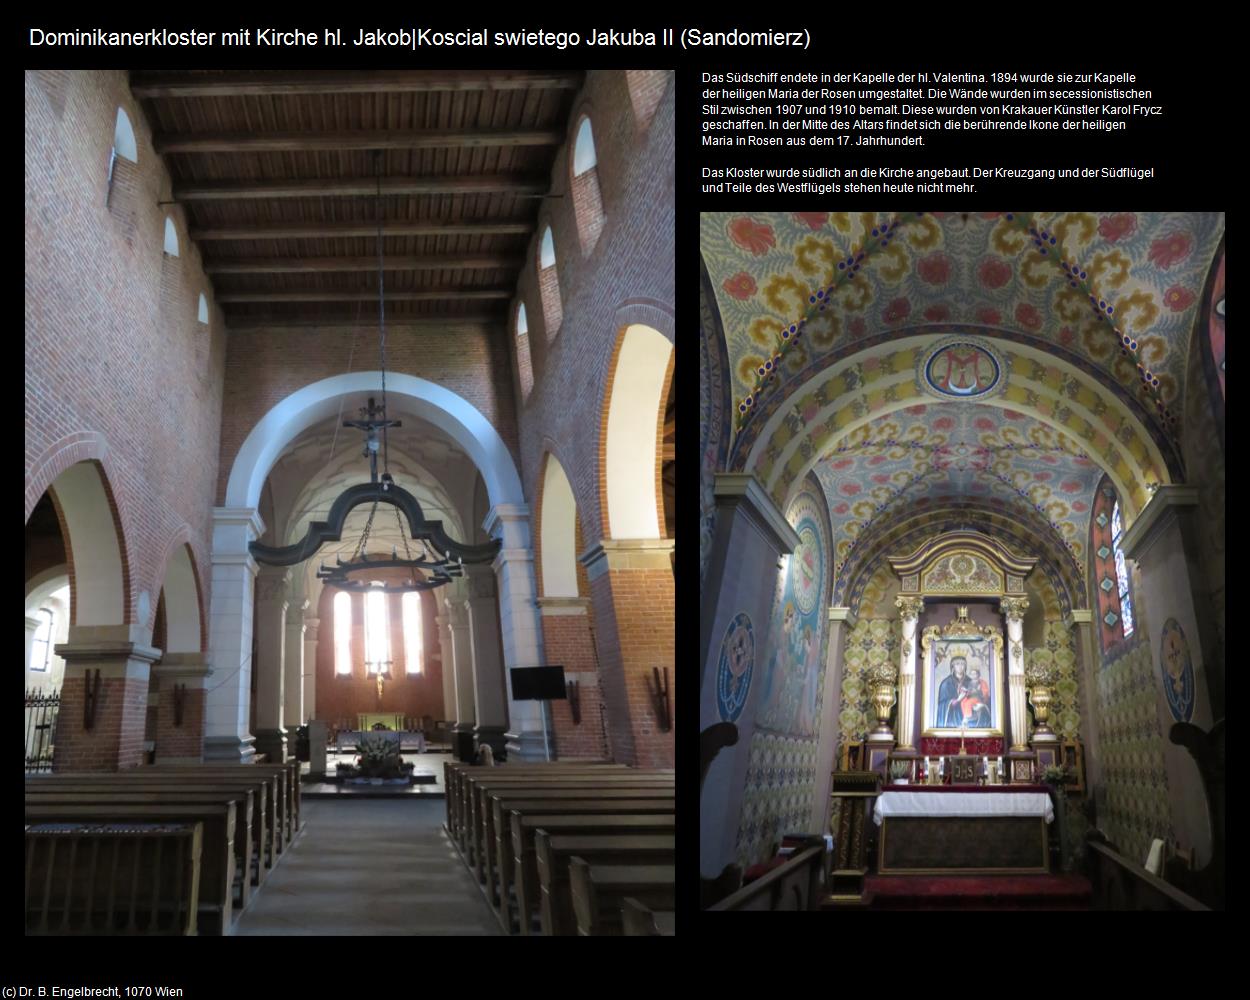 Dominikanerkloster mit Kirche hl. Jakob II (Sandomierz) in POLEN-Galizien